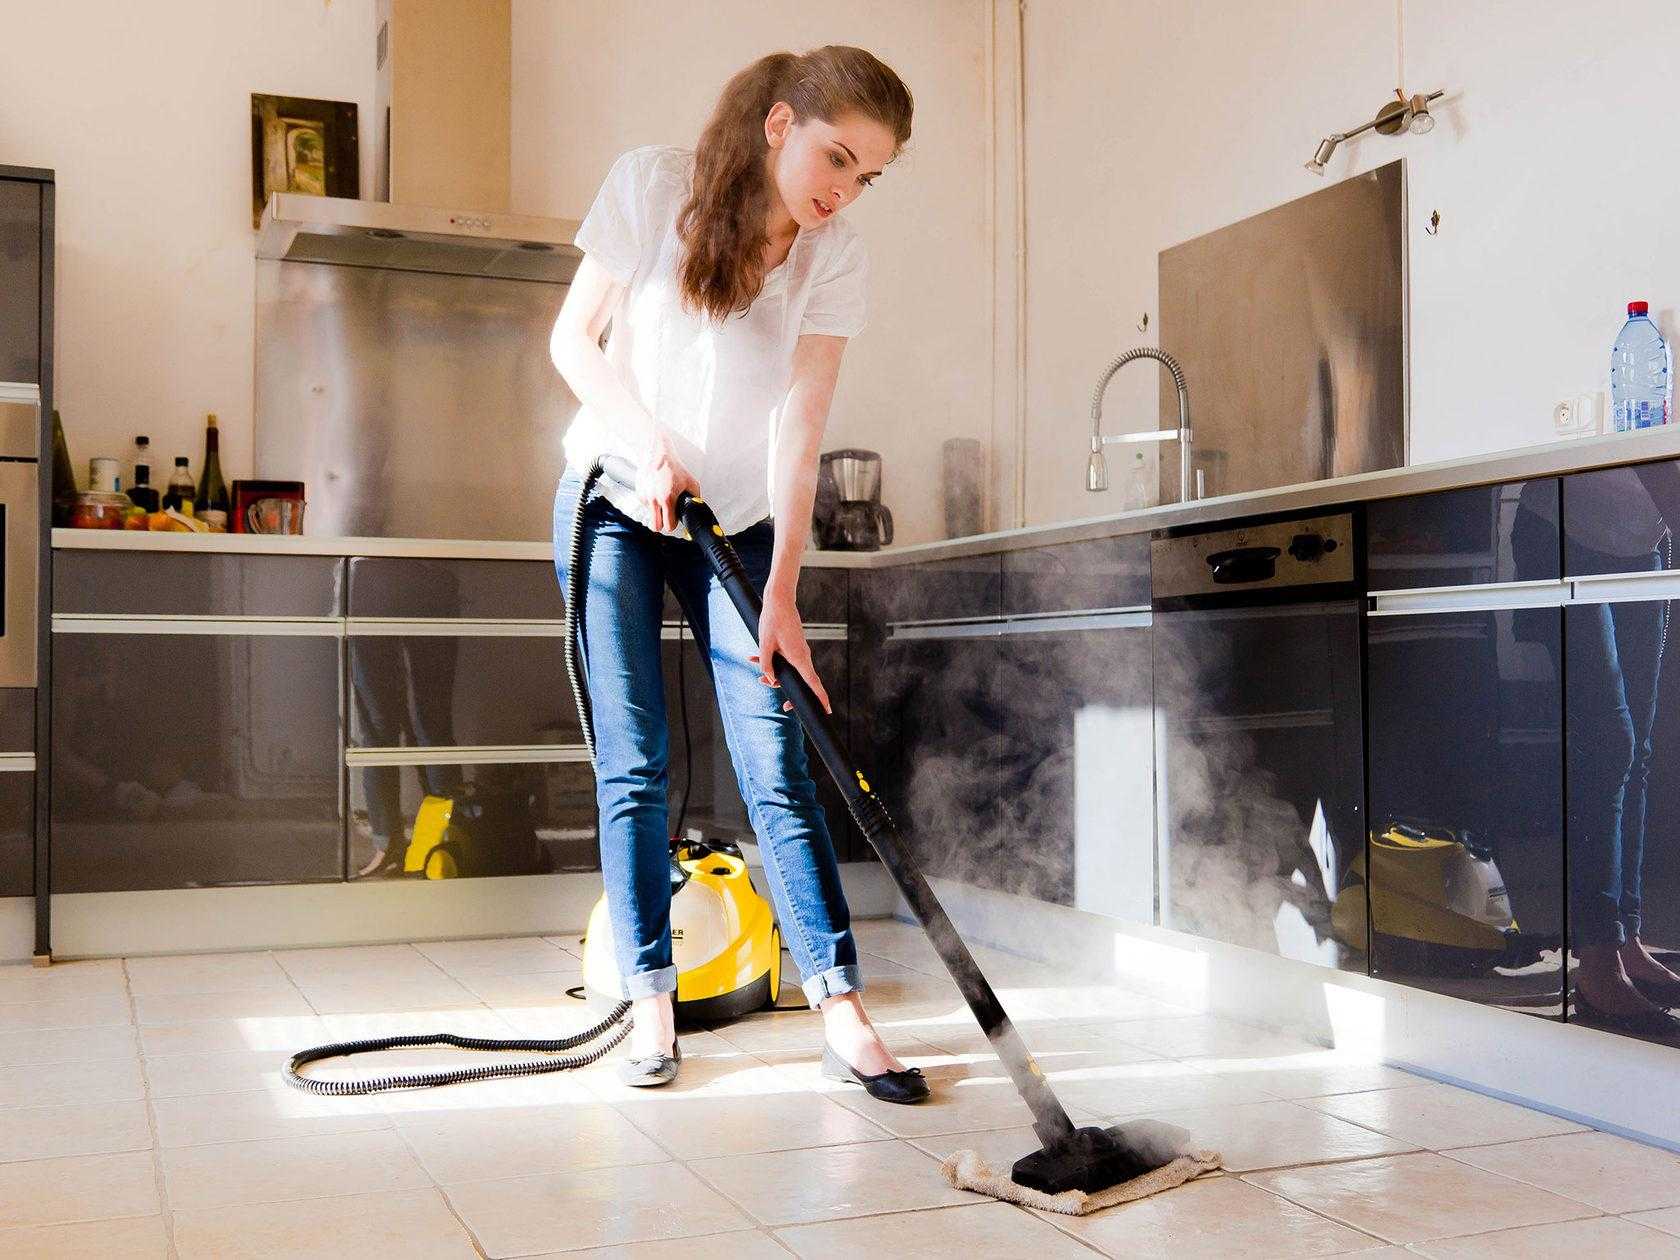 Кухня относится к тому месту, где хозяйка находится больше всего времени. Чистота пространства помогает сформировать подходящую эмоциональную атмосферу в доме, обеспечить здоровье всех домочадцев.